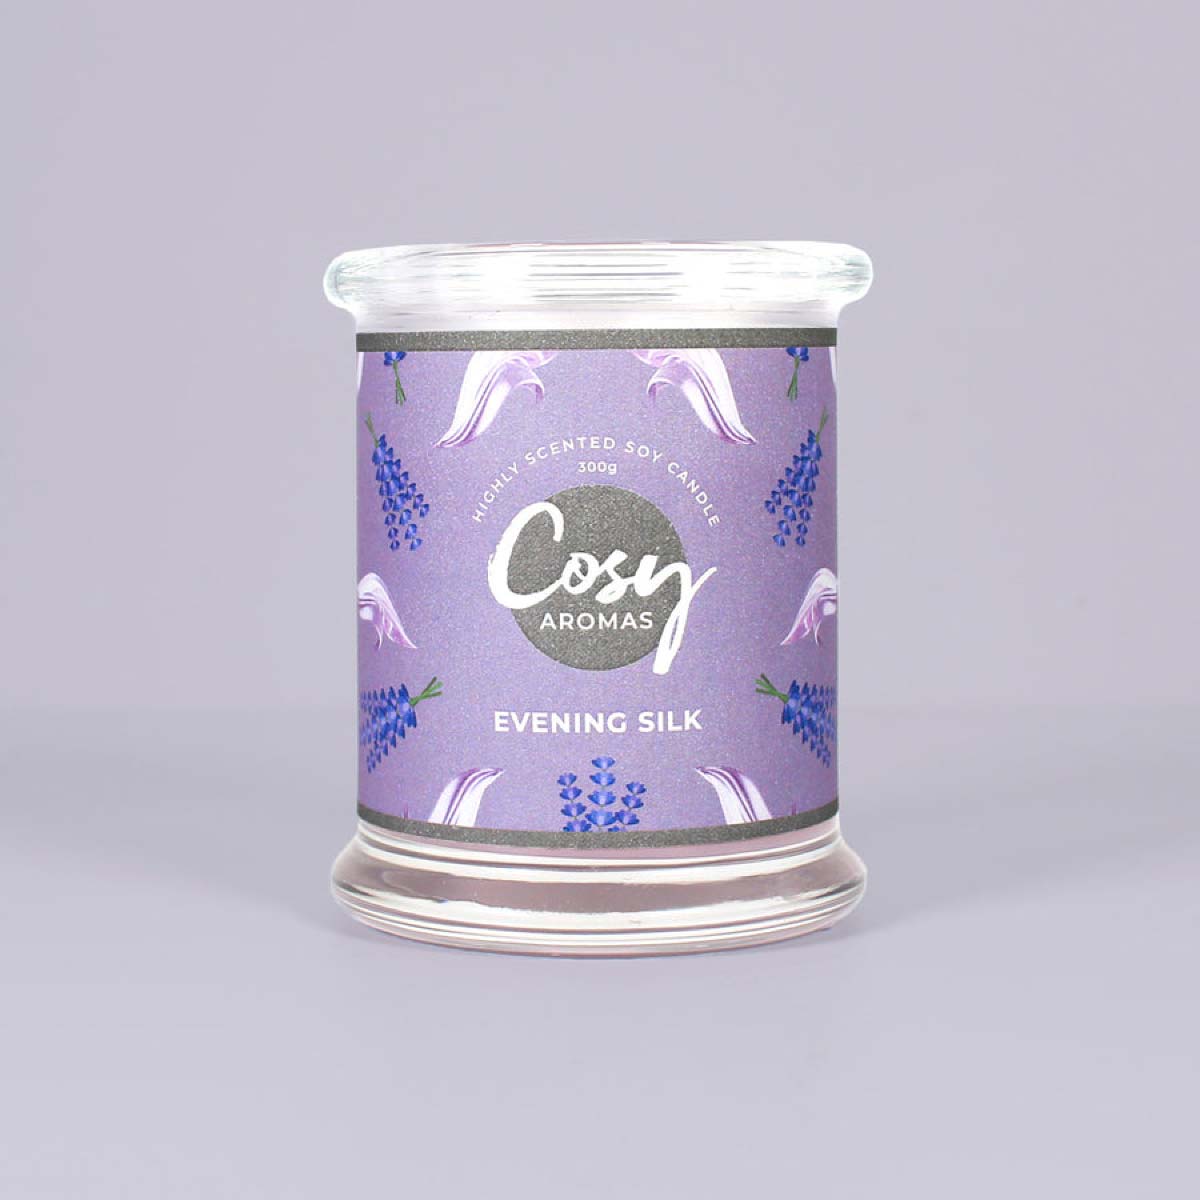 Evening Silk Jar Candle 240g von Cosy Aromas